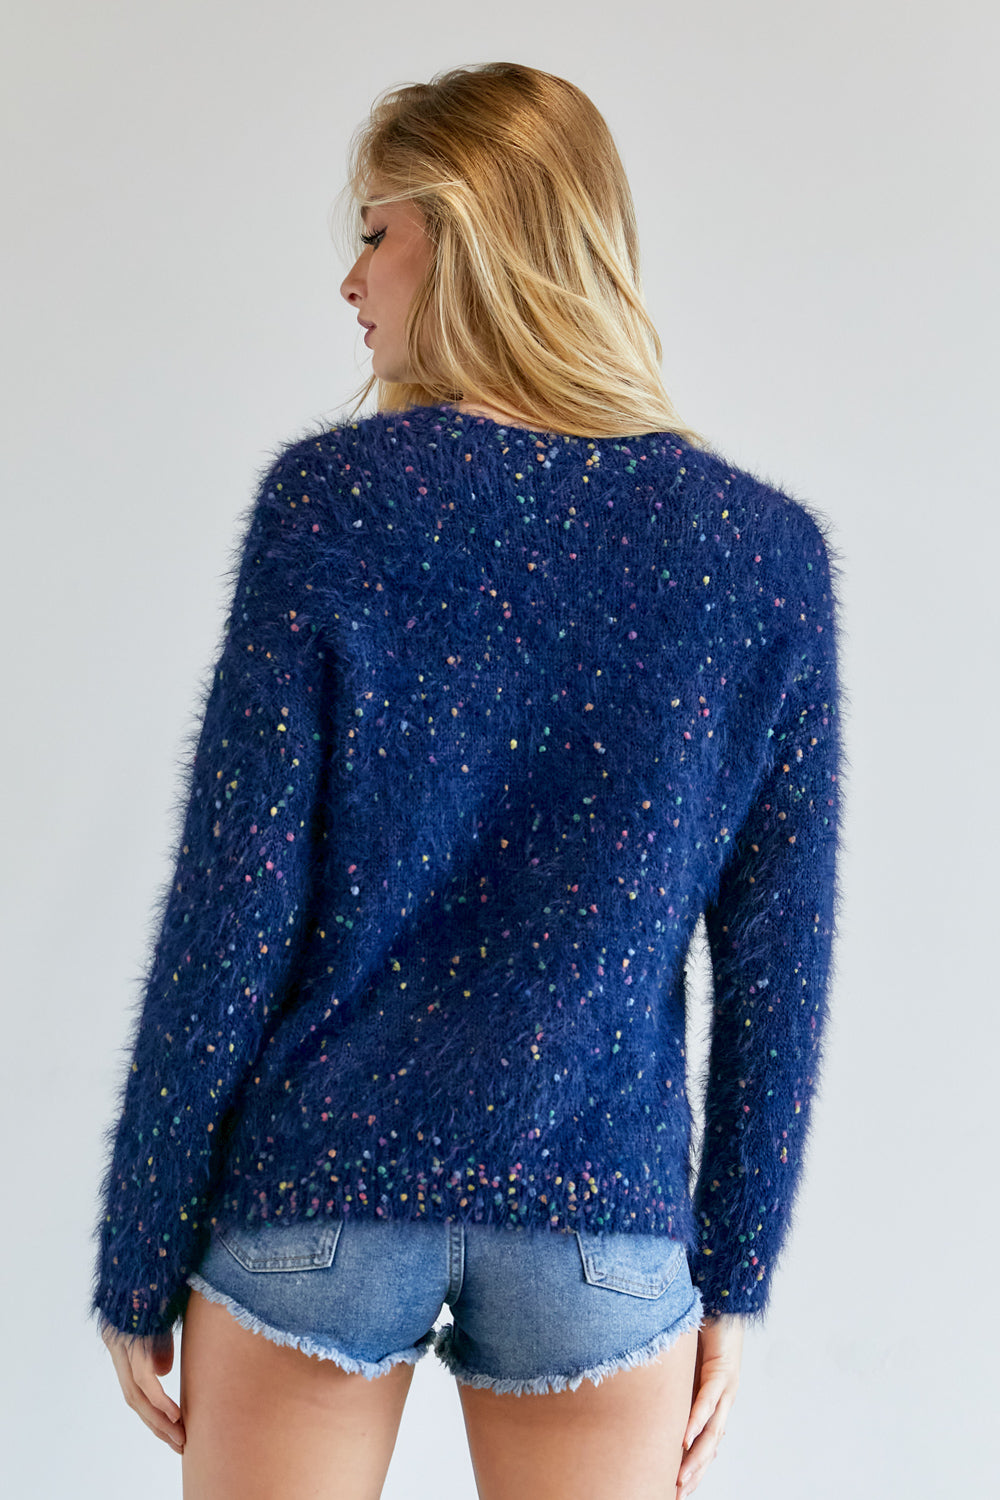 Women's Cute Multi Color Polak Dot Sweater